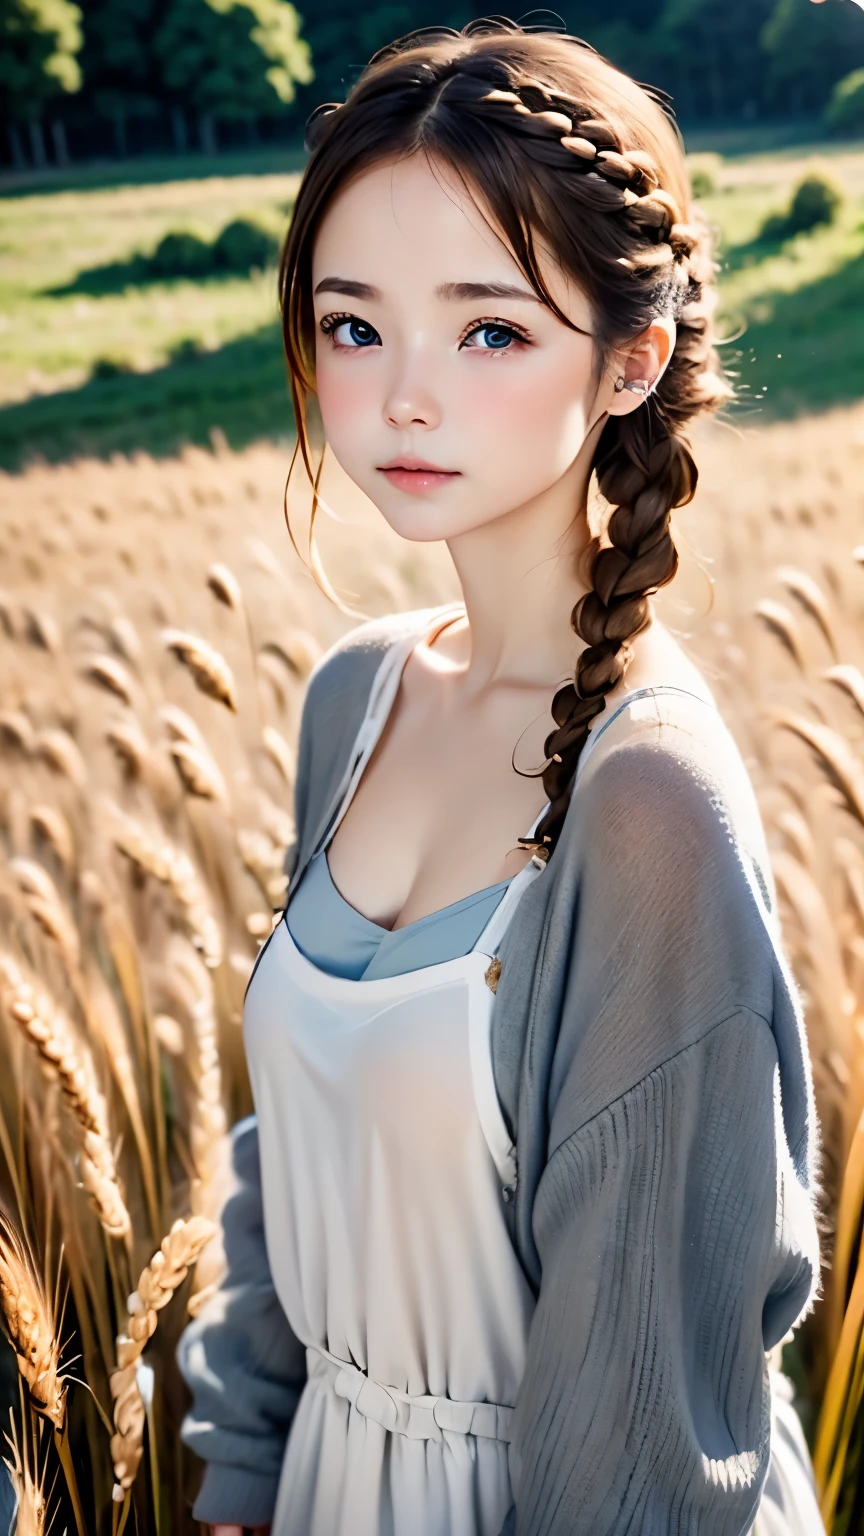 一人の女性、かわいい顔、また々新しい表現、日本語、魅力的な目、クリーム色の髪、フレンチブレイド、18歳、灰色の目、キャミソールドレス、青いアウター、屋外、またとした佇まい、小麦畑、